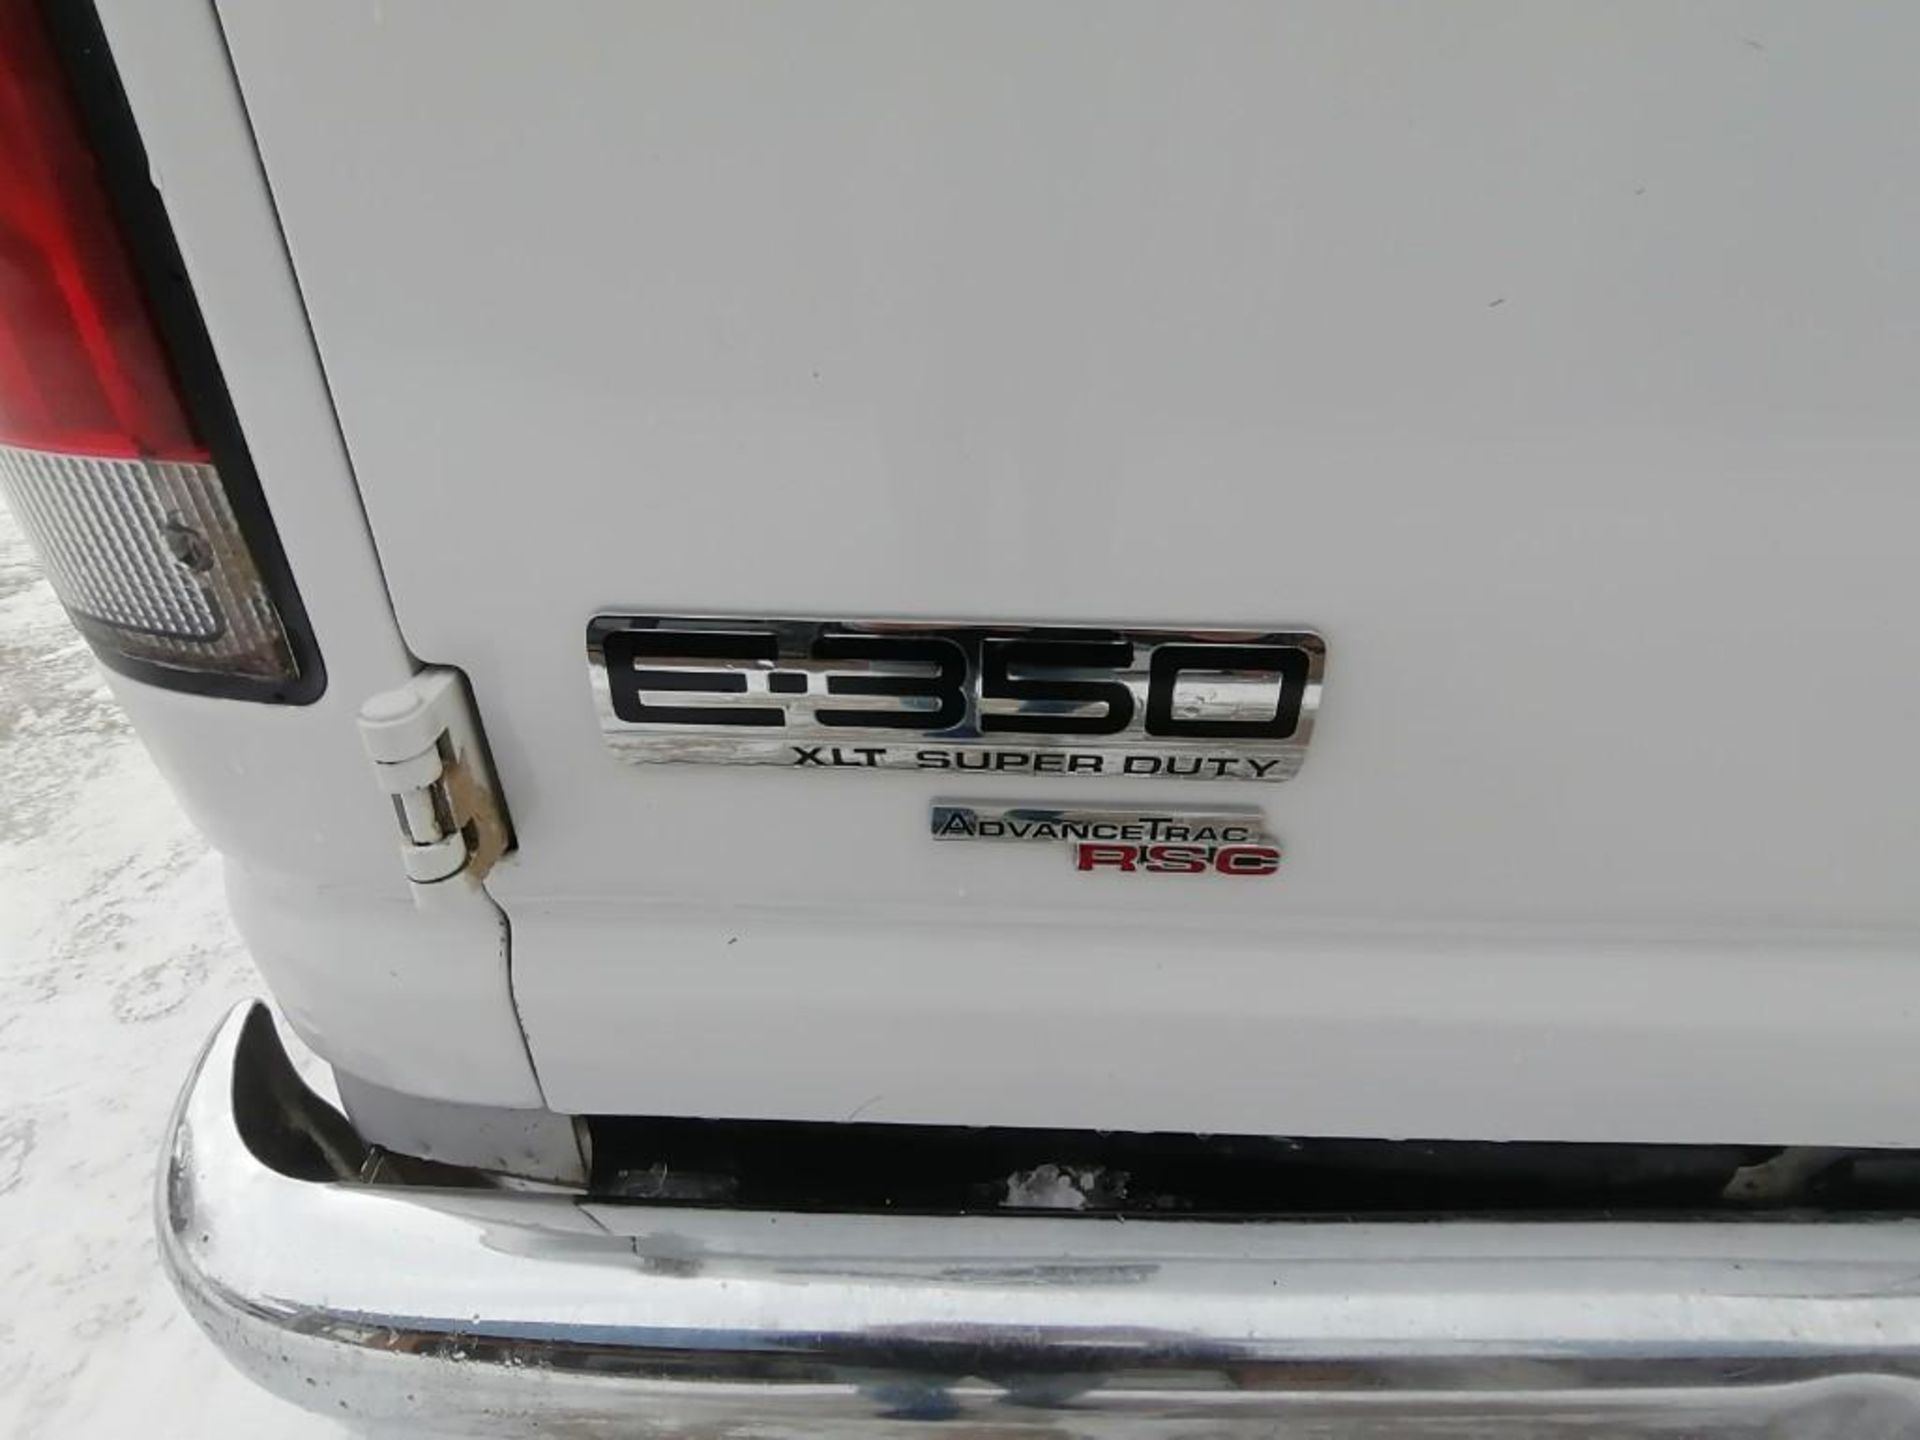 2013 Ford E3500 XLT Super Duty Van, VIN #1FBSS3BL7DDB13331, 209594 Miles, Model E3500XLT Super - Image 7 of 28